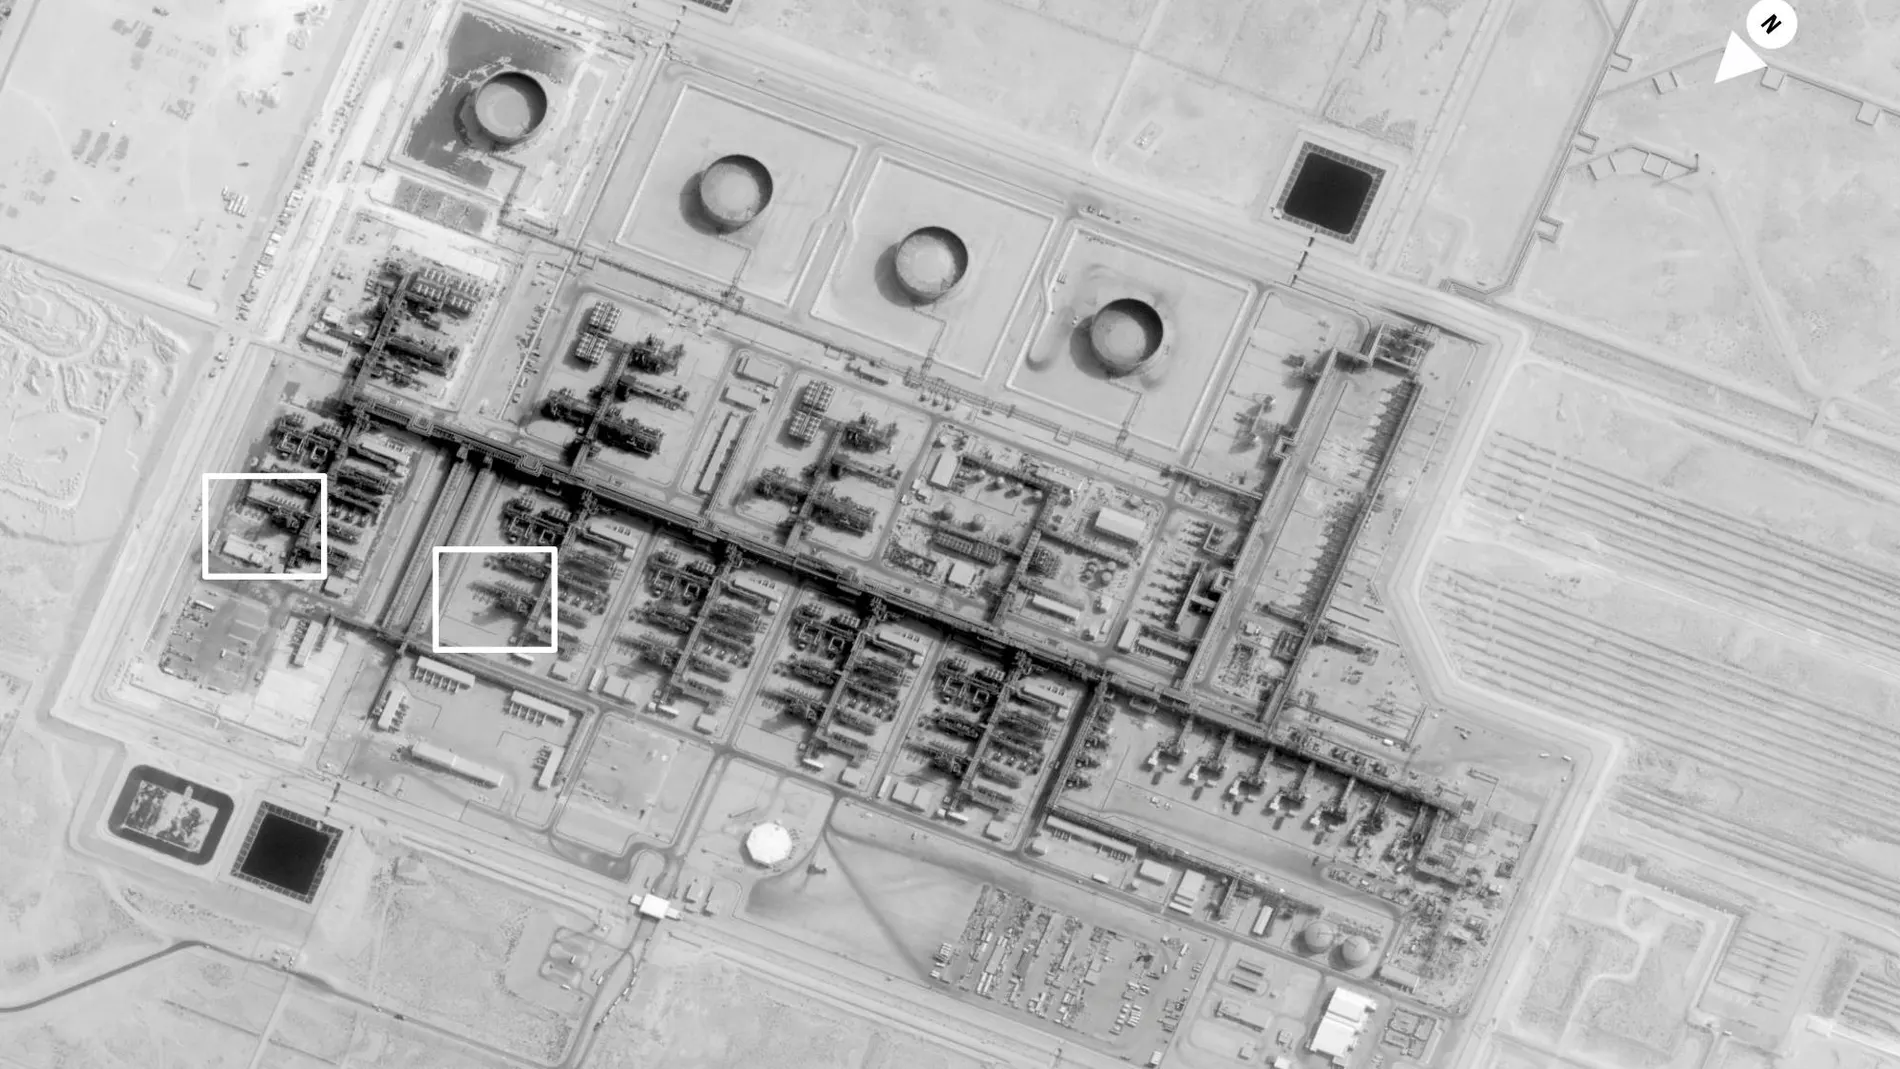 Imagen difundida por el Gobierno de Estados Unidos de la refinería de Aramco atacada/ AP